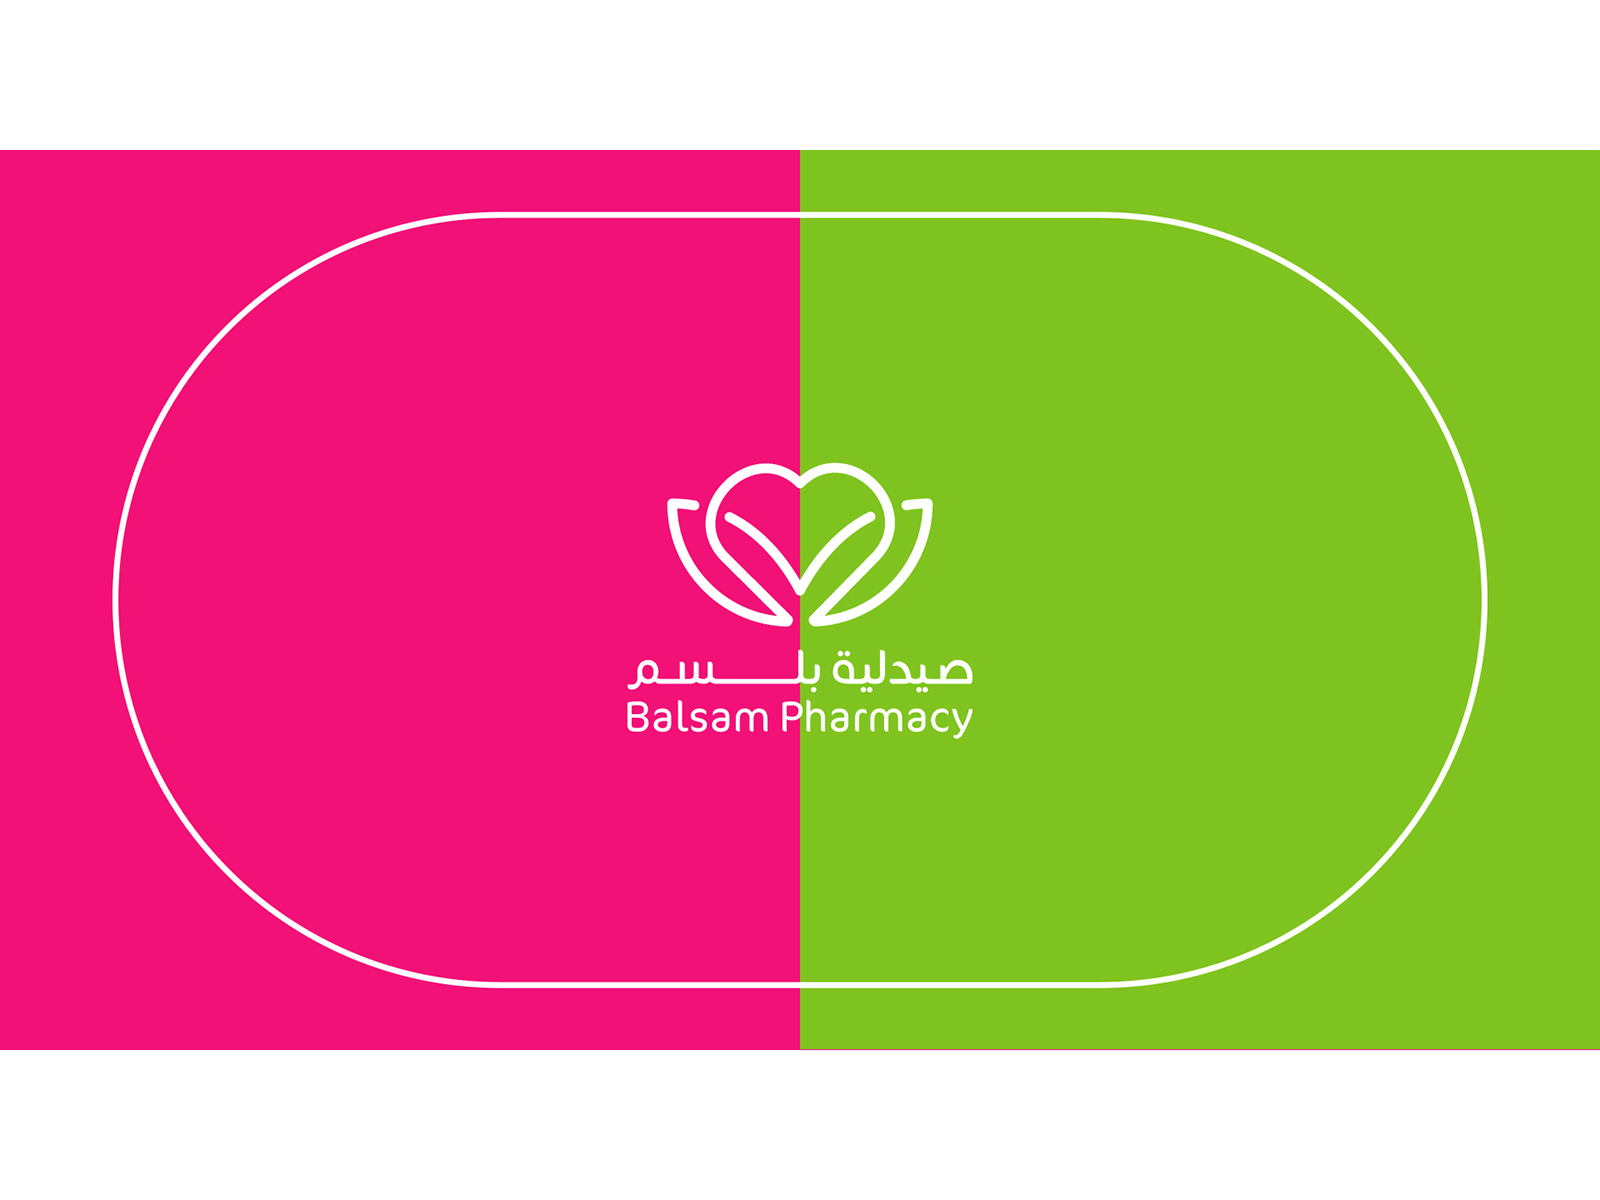 Balsam Pharmacy animated animation branding design green illustration logo logodesign magenta pharmacy